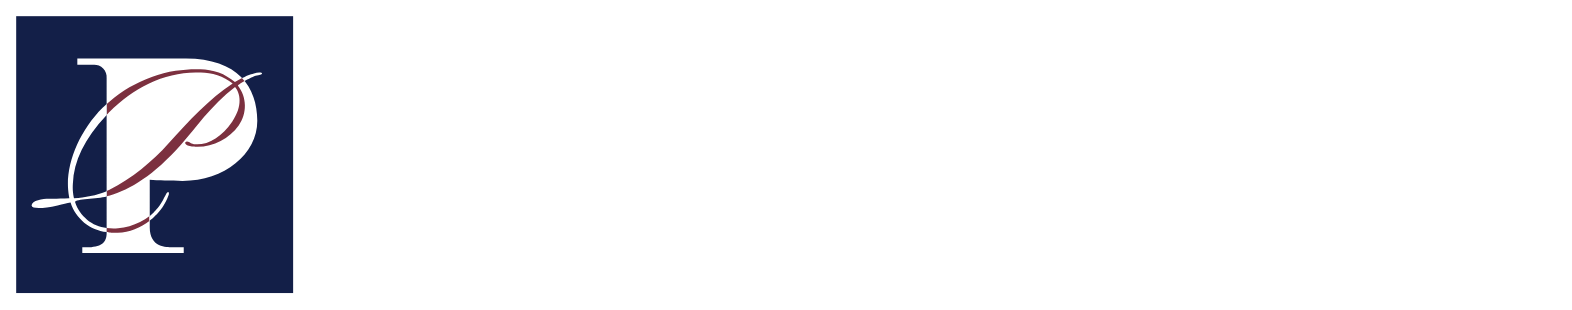 Pacific Premier Bancorp
 logo grand pour les fonds sombres (PNG transparent)